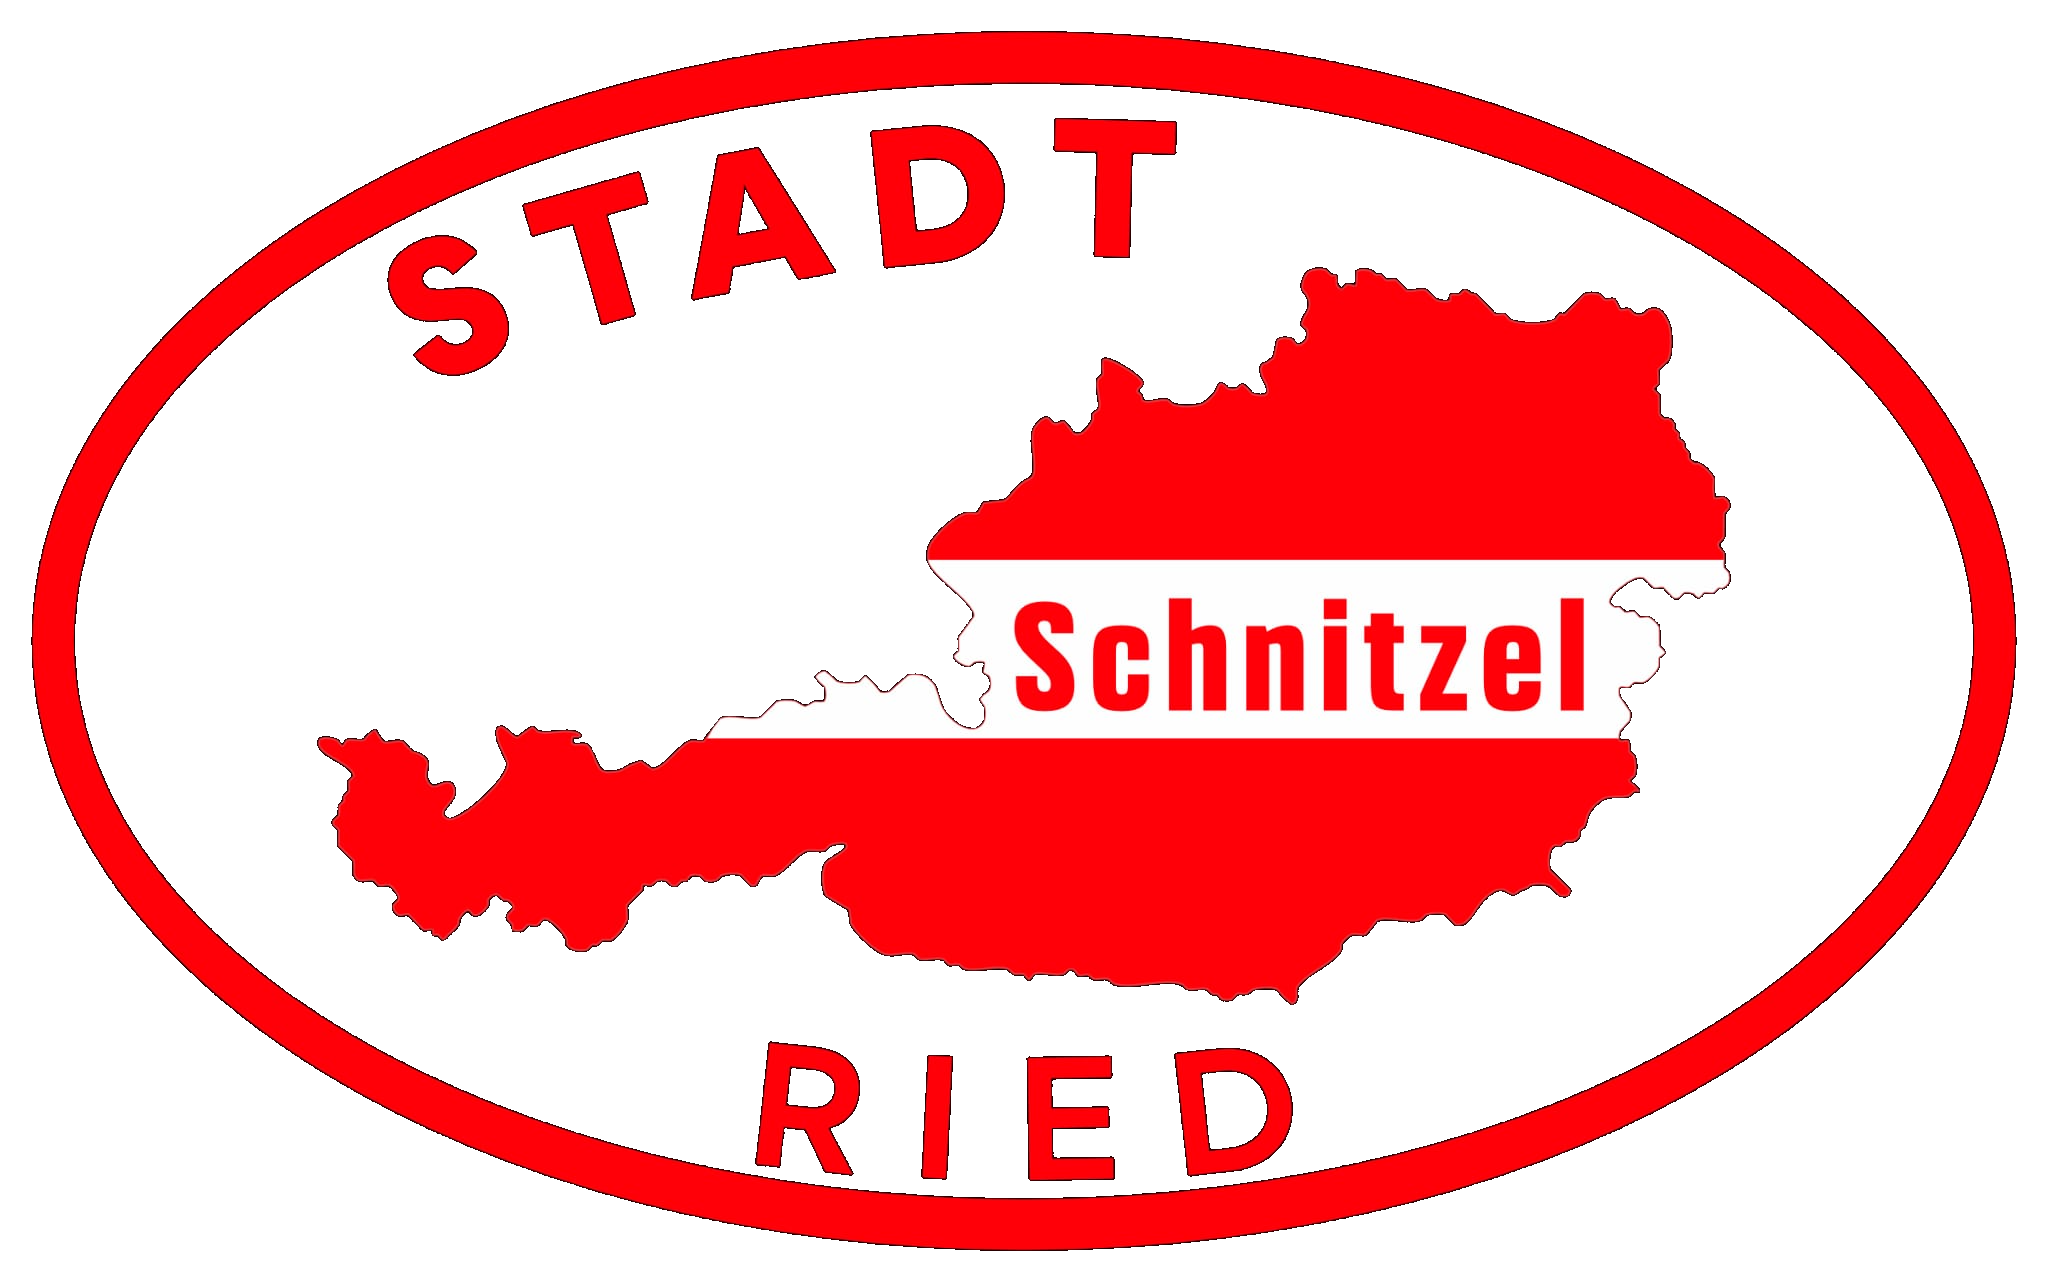 StadtSchnitzel